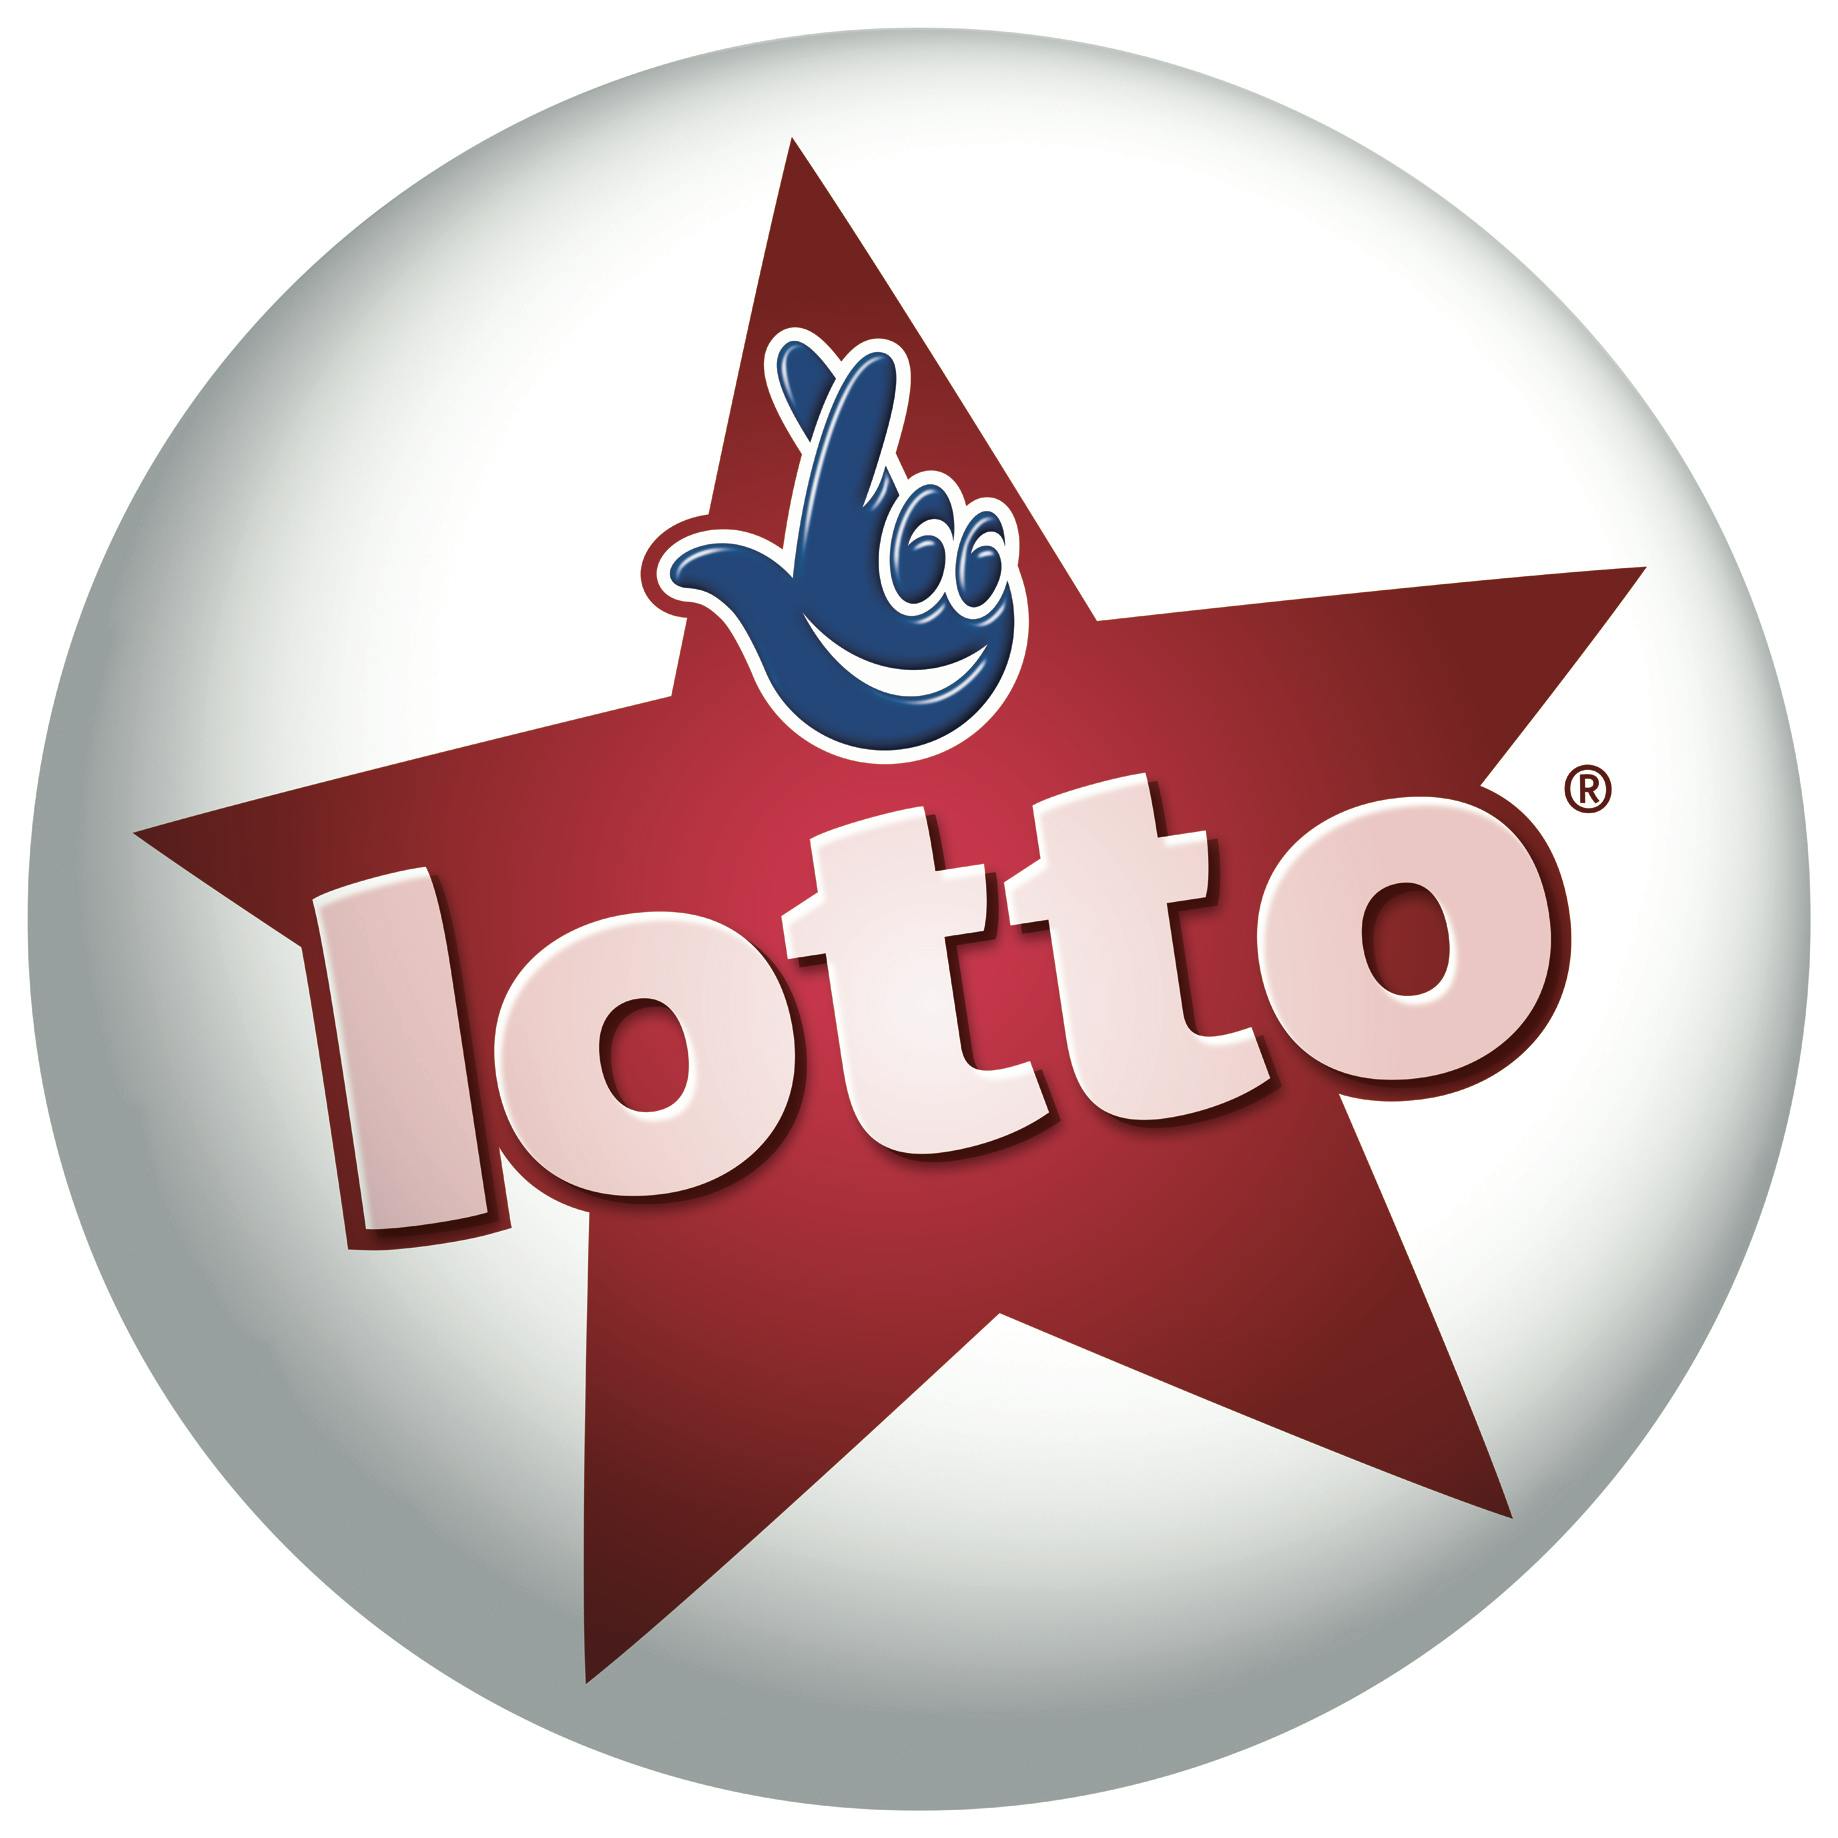 feb 8 2019 lotto result